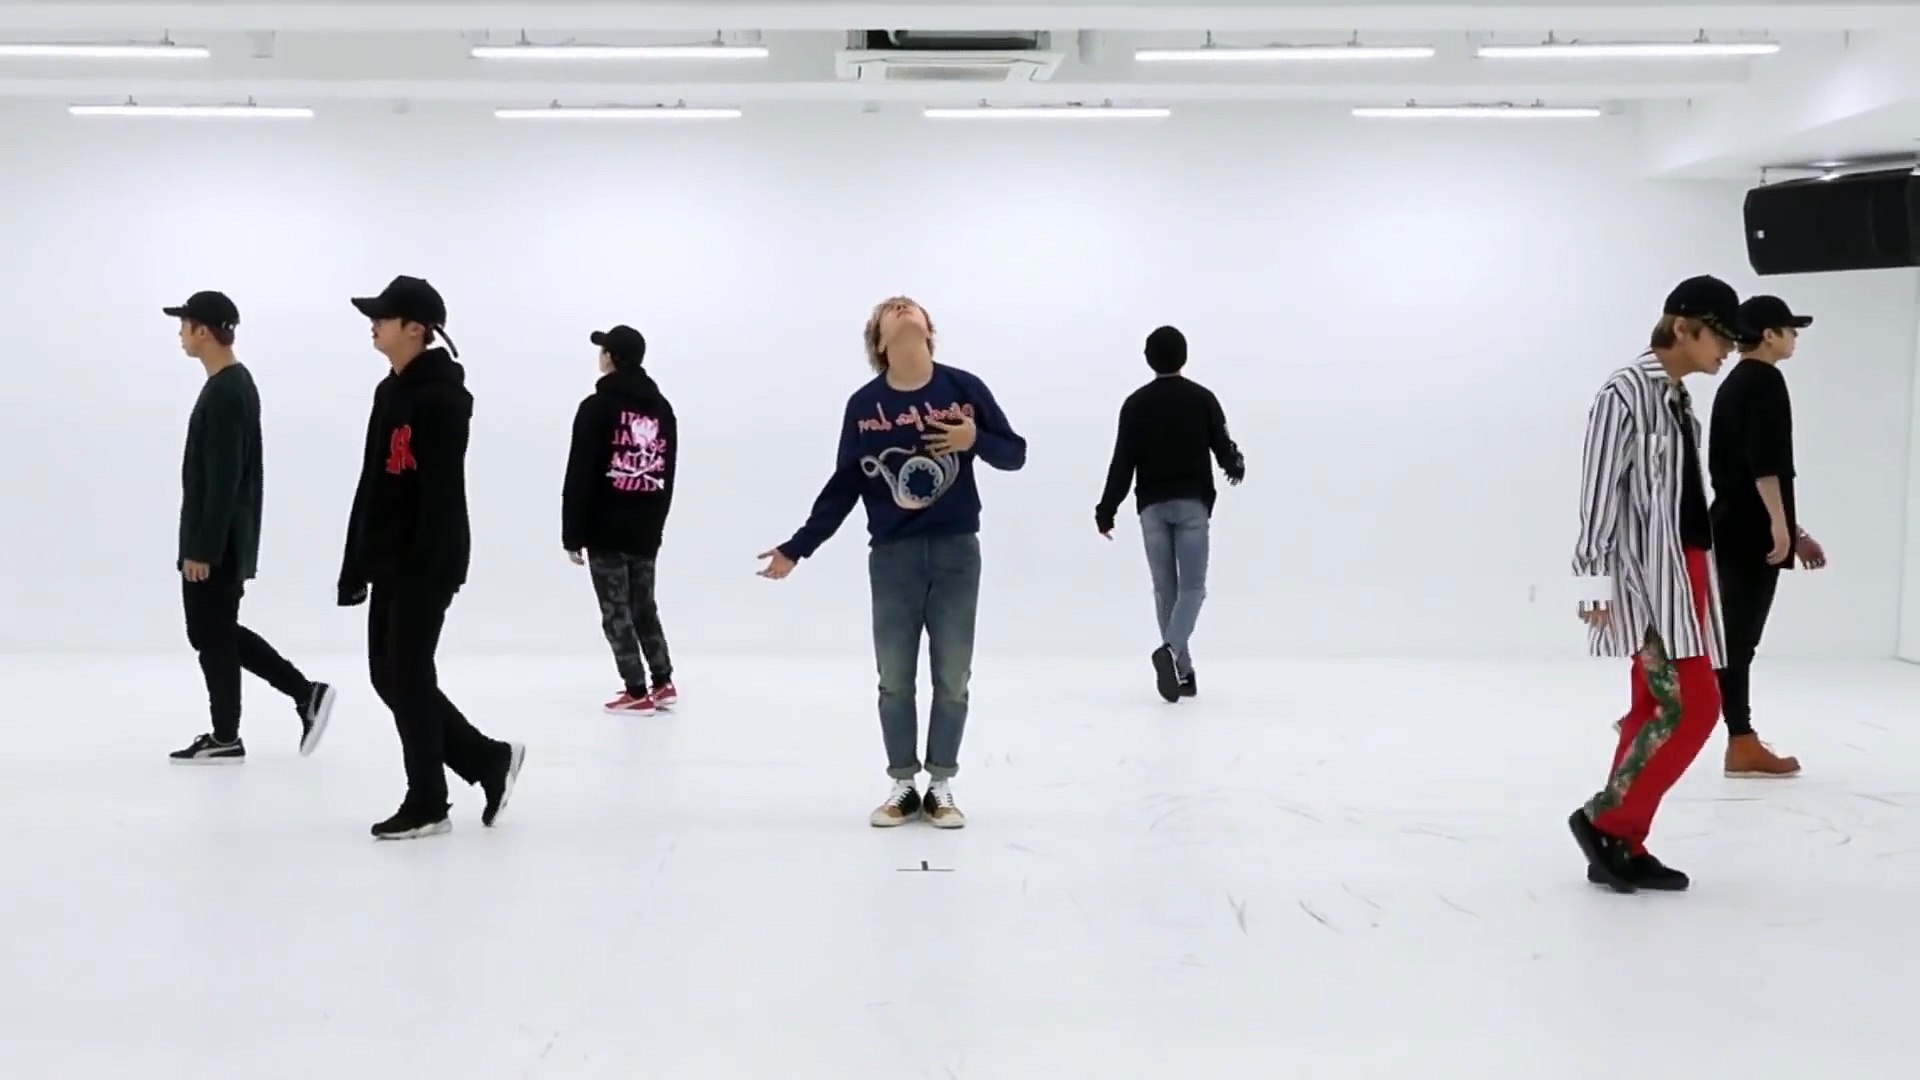 BTS 'We Are Bulletproof Pt 2' mirrored Dance Practice 